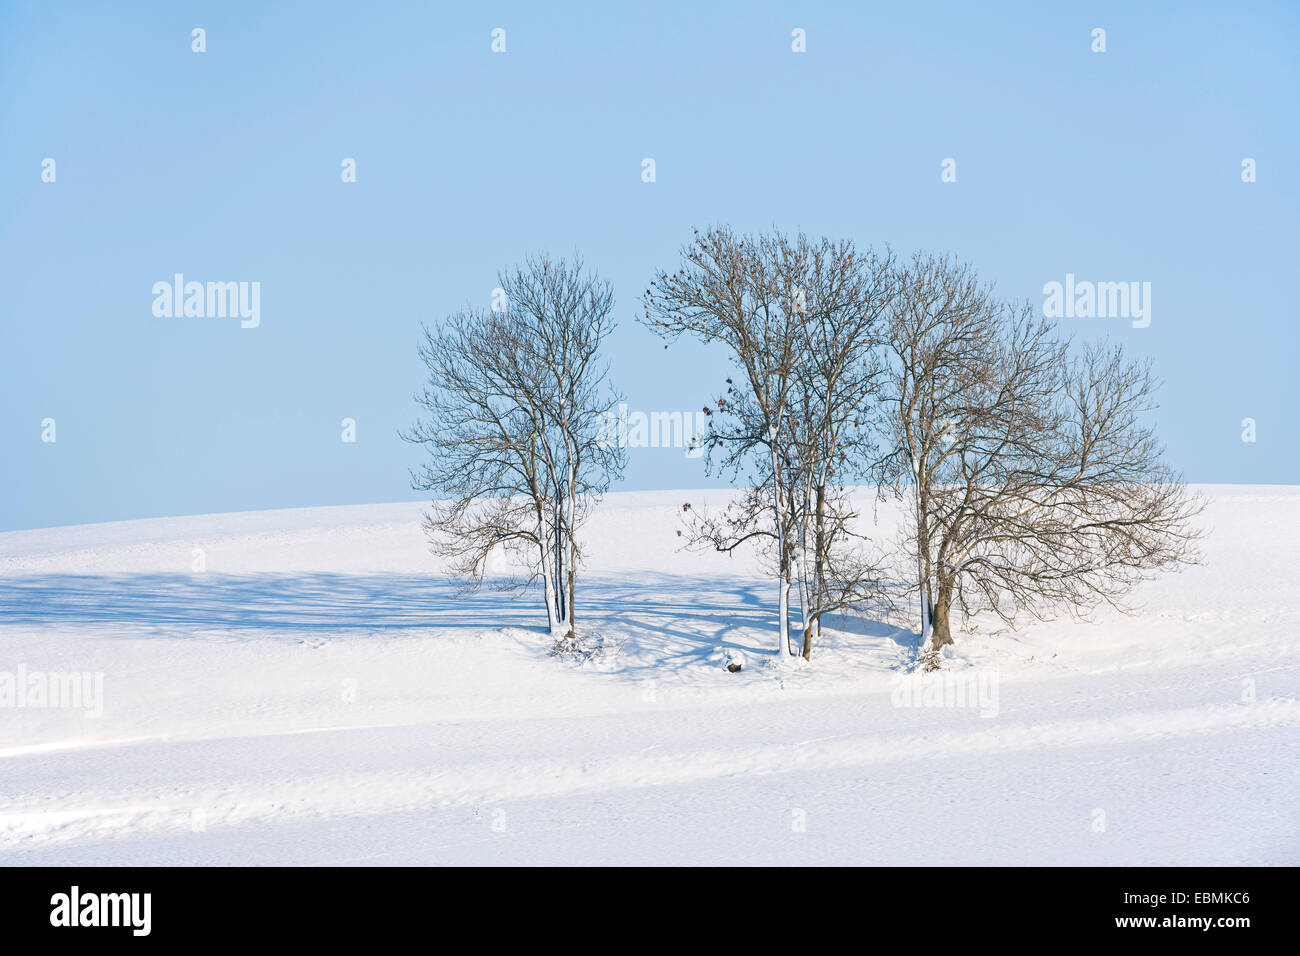 Frêne ou frêne commun (Fraxinus excelsior) des arbres dans la neige, Bavière, Allemagne Banque D'Images